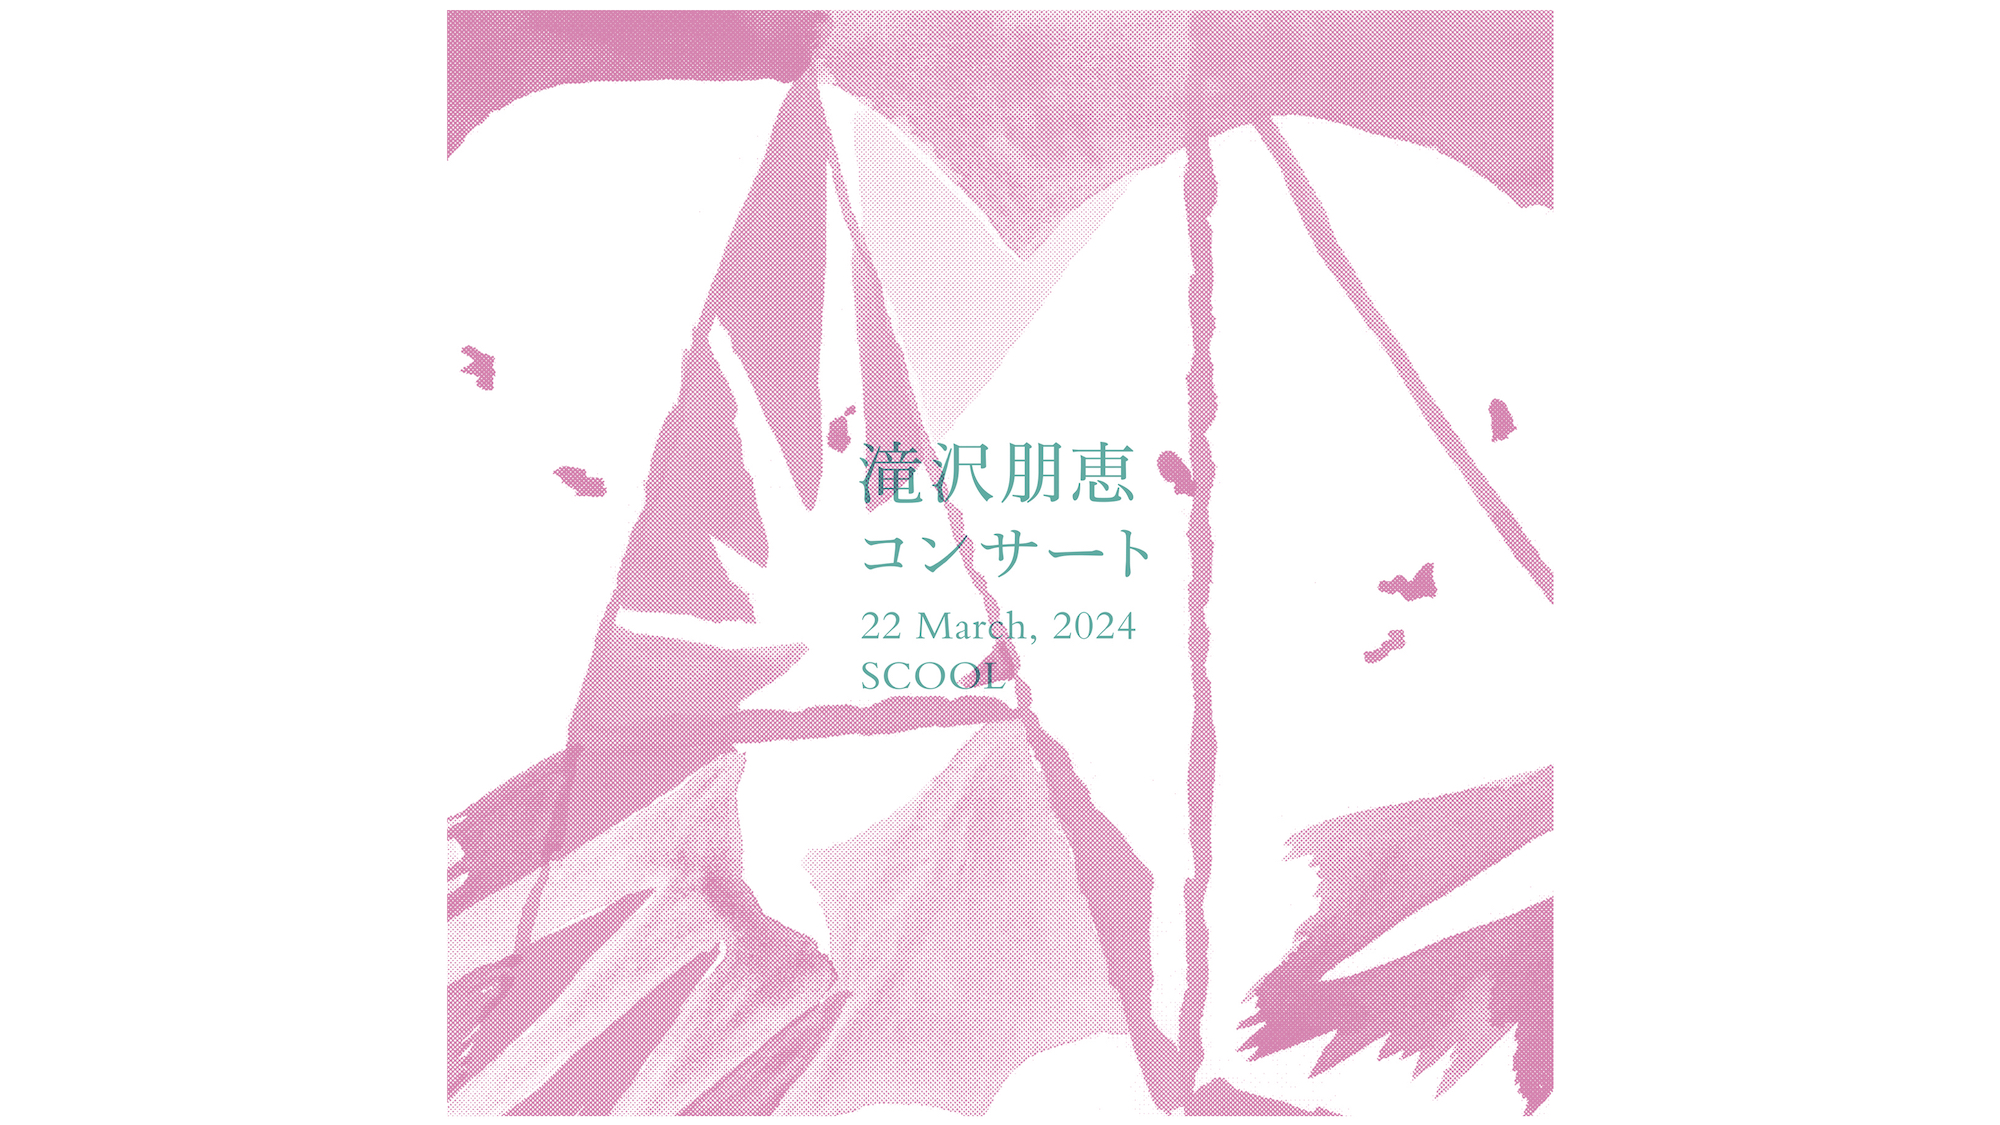 滝沢朋恵 4th ALBUM『AMBIGRAM』発売記念コンサート